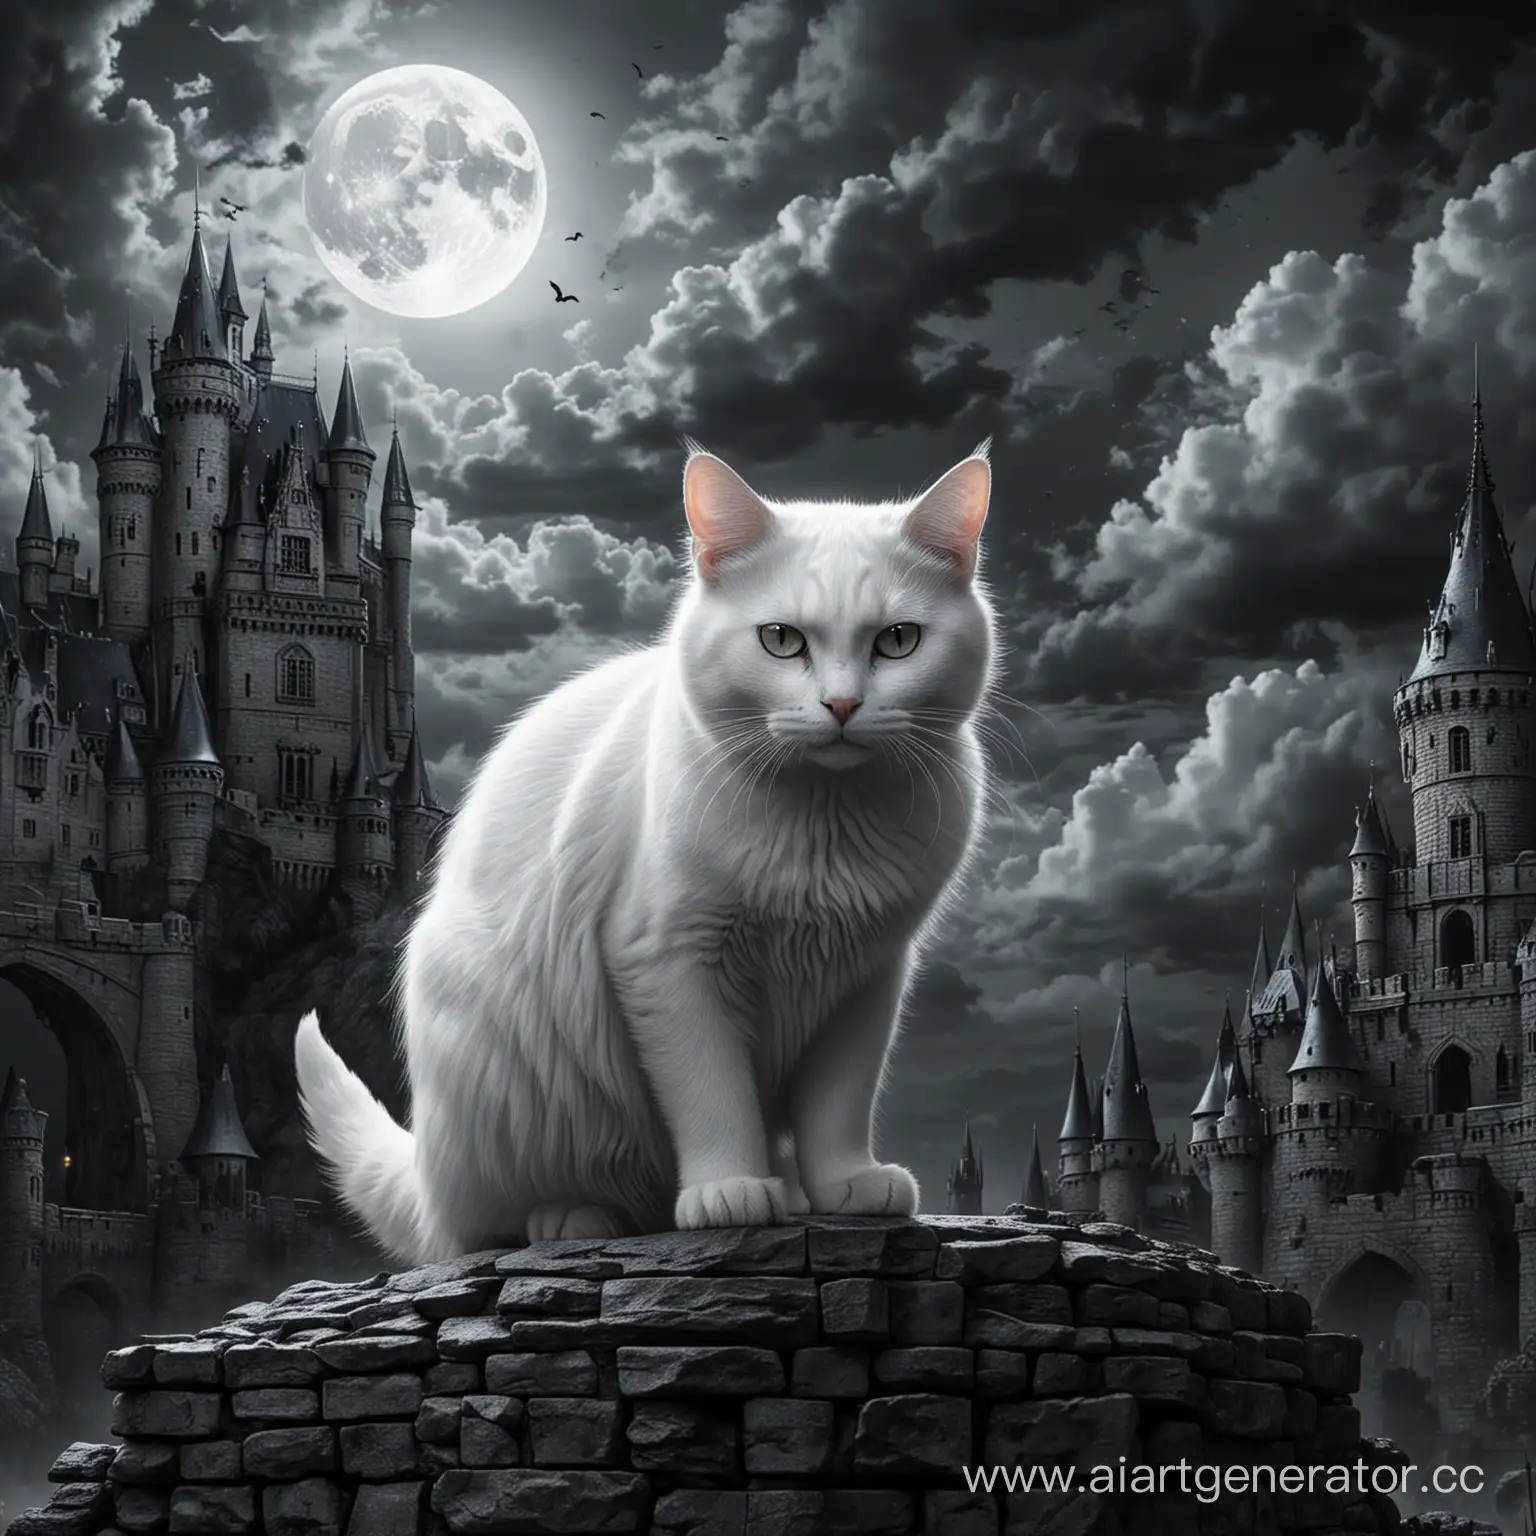 белый кот-демон на фоне замка, все черно-белое очень реалистично, ночь облачная, светит луна.